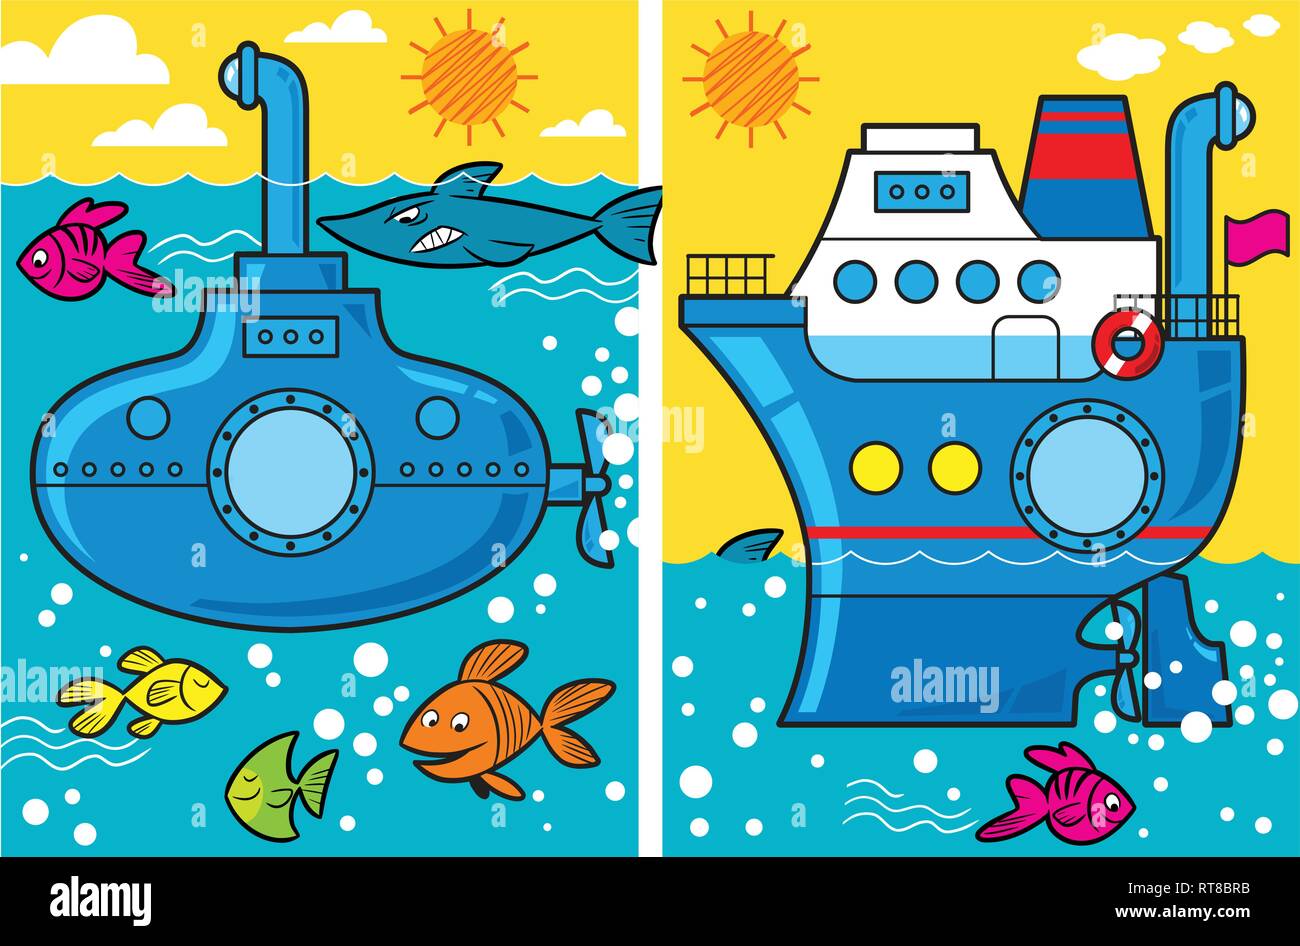 L'illustration cartoon présente sous-marin et d'un navire en mer, les poissons nagent autour d'eux Illustration de Vecteur